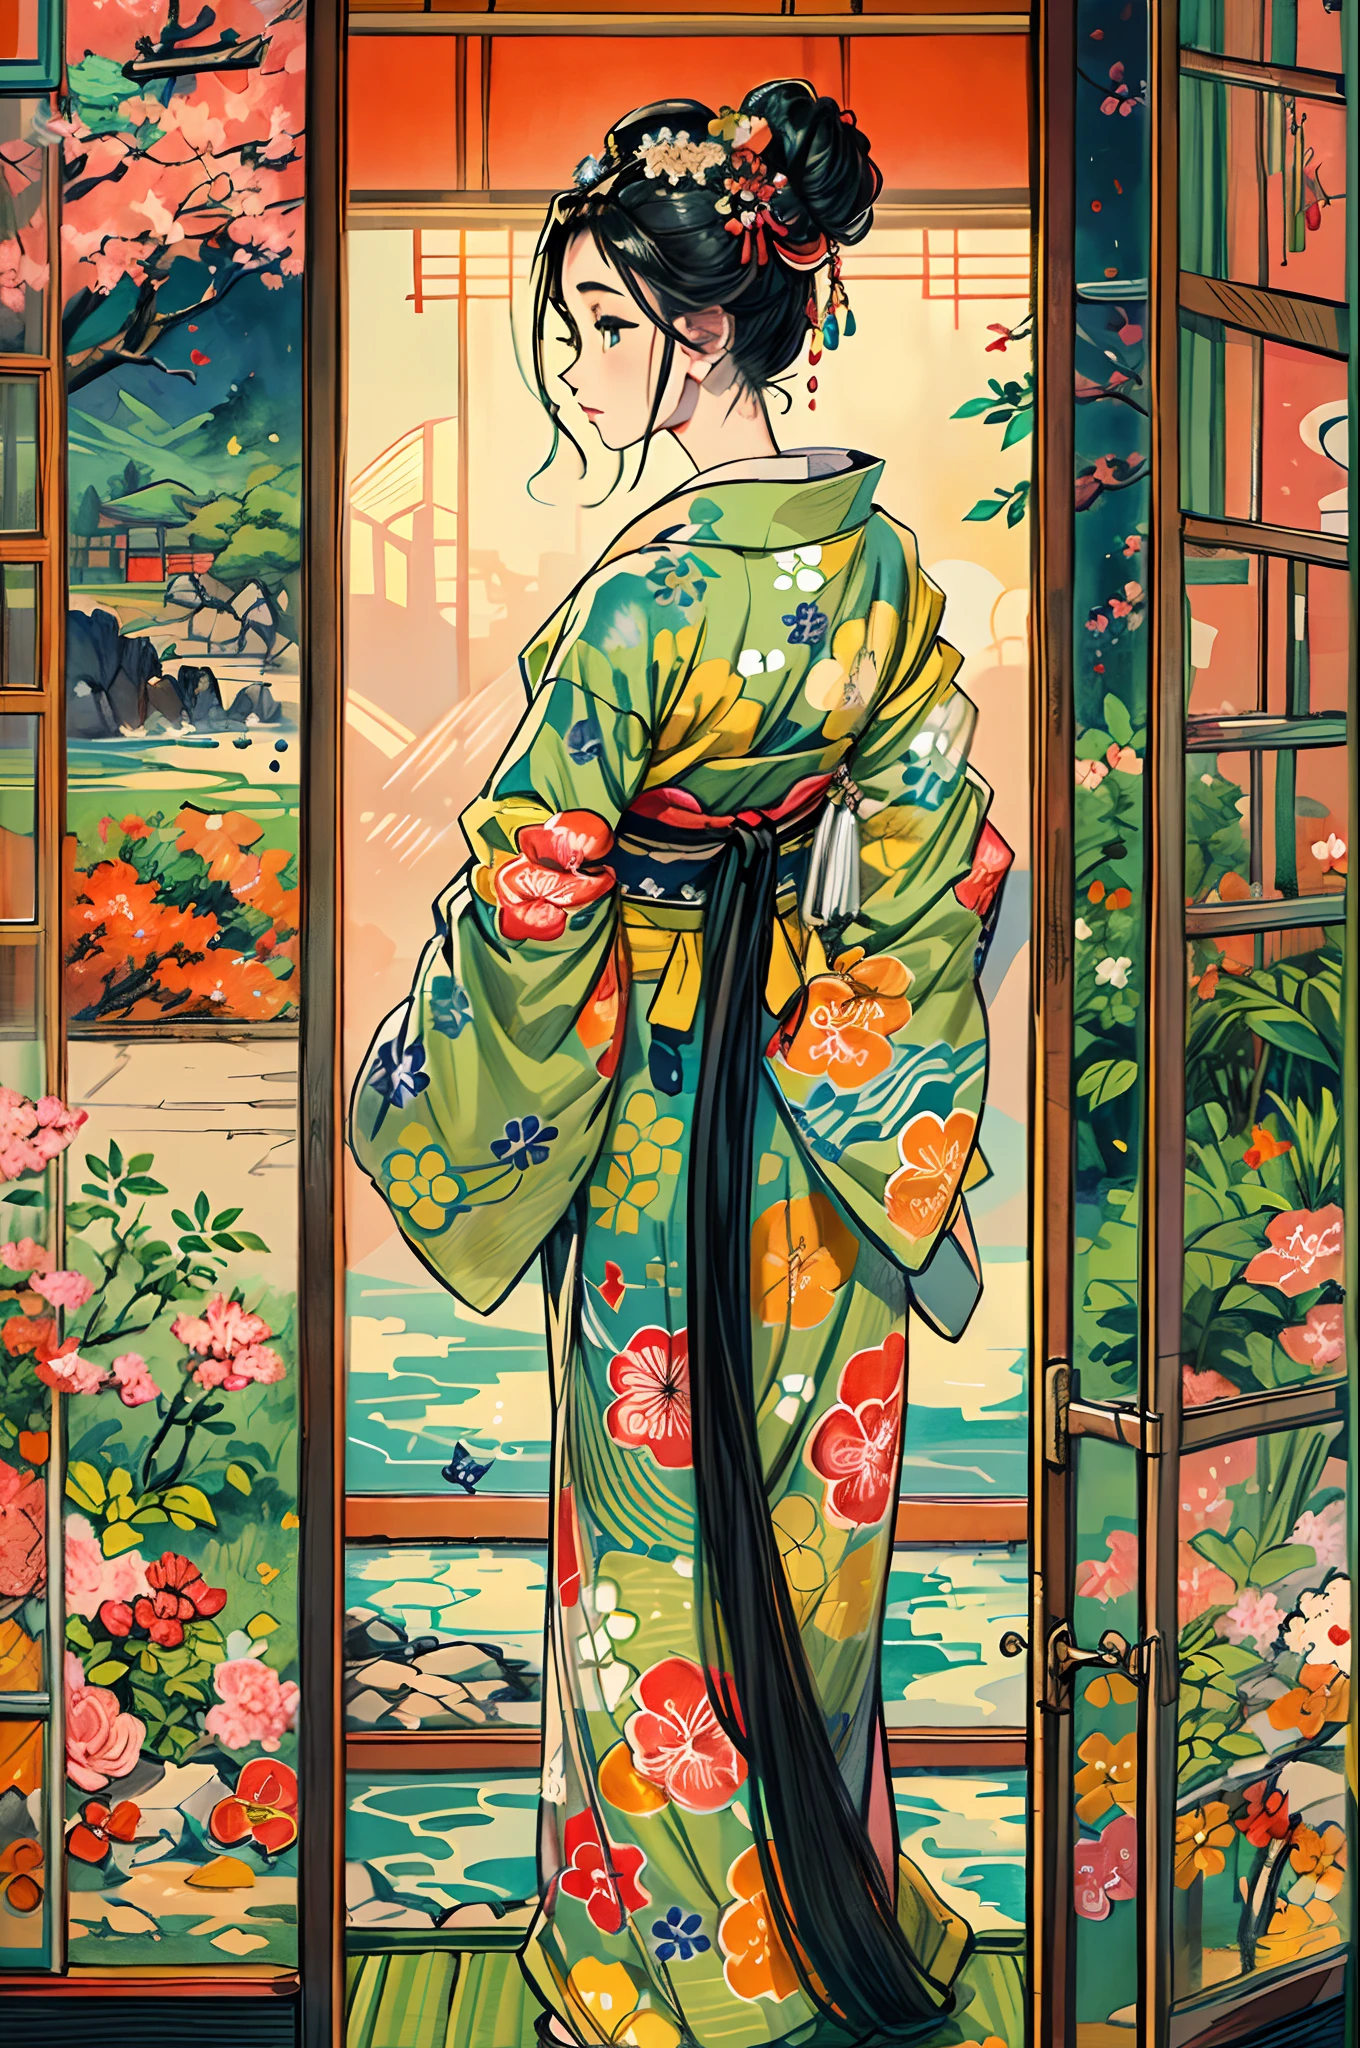 "(令人驚嘆的傑作，品質無可挑剔:1.5), 從前側視圖拍攝, 具有充滿活力和飽和的色彩, 一個有著黑髮和精緻的臉龐的美麗女孩, 從自下而上的角度來看, 身著傳統和服, 以日本風景優美為背景, 被榻榻米的正宗氛圍包圍, 開著的窗戶構成了場景."